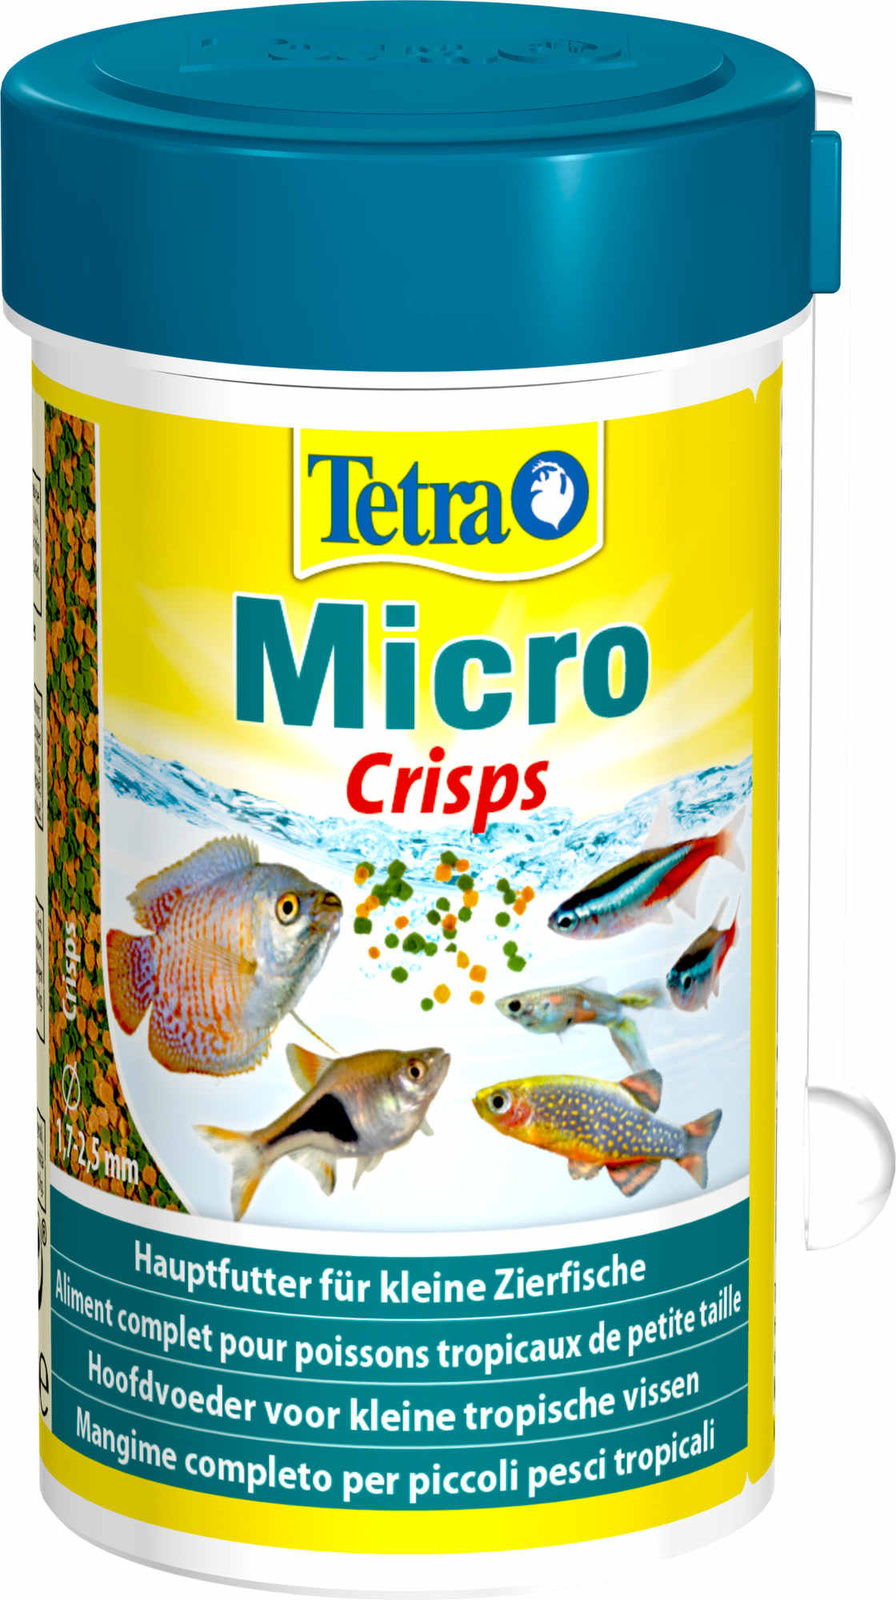 Tetra (корма) Tetra (корма) корм для для всех видов мелких рыб, микрочипсы (39 г) tetra корма tetra корма корм для всех видов крупных рыб крупные гранулы 82 г